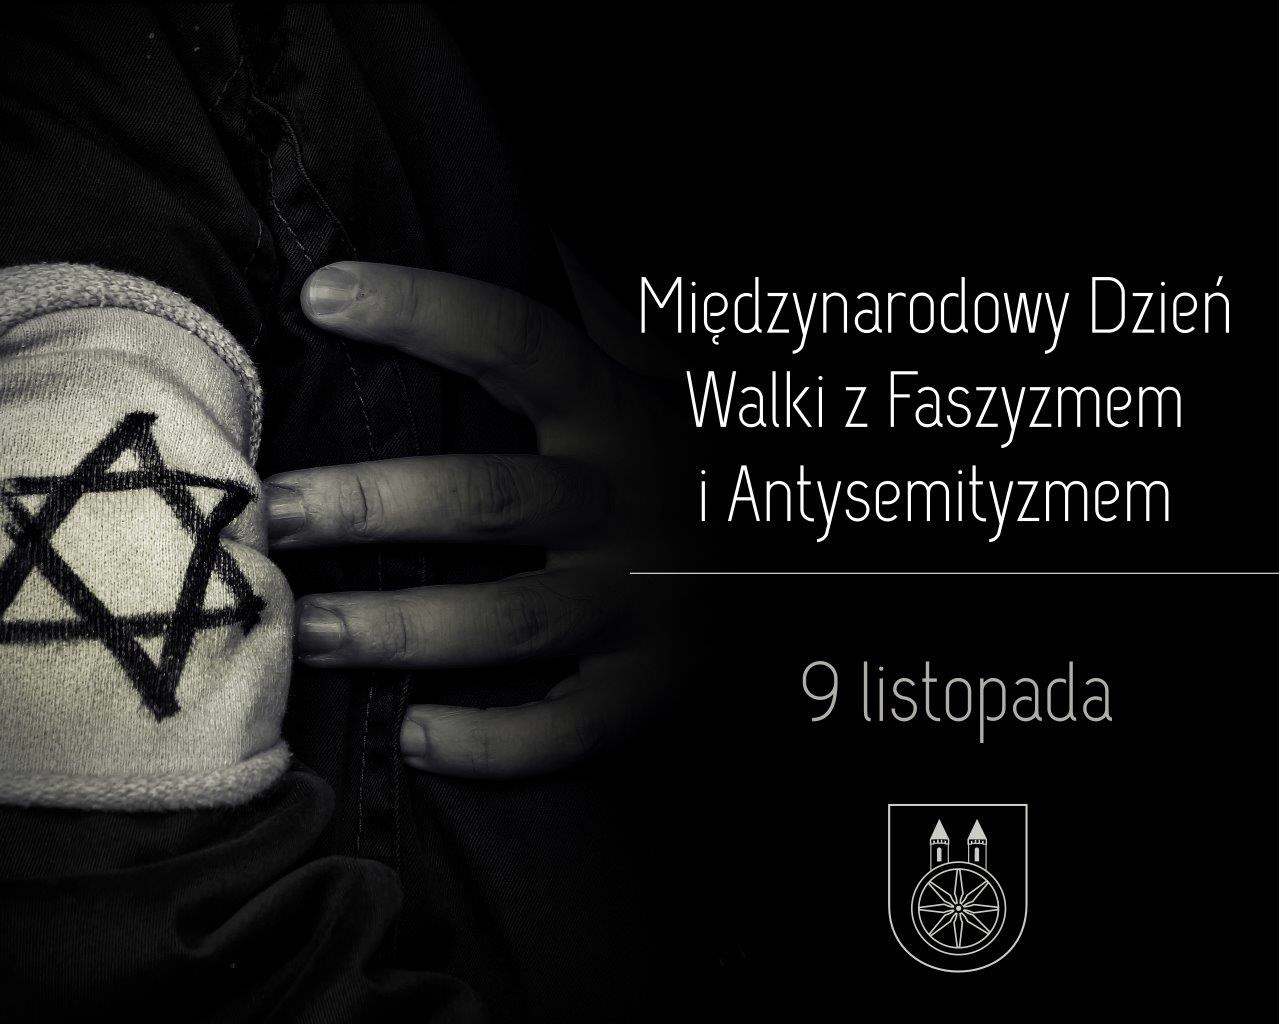 Plansza Międzynarodowy Dzień Walki z Faszyzmem i Antysemityzmem, tekst pod planszą.